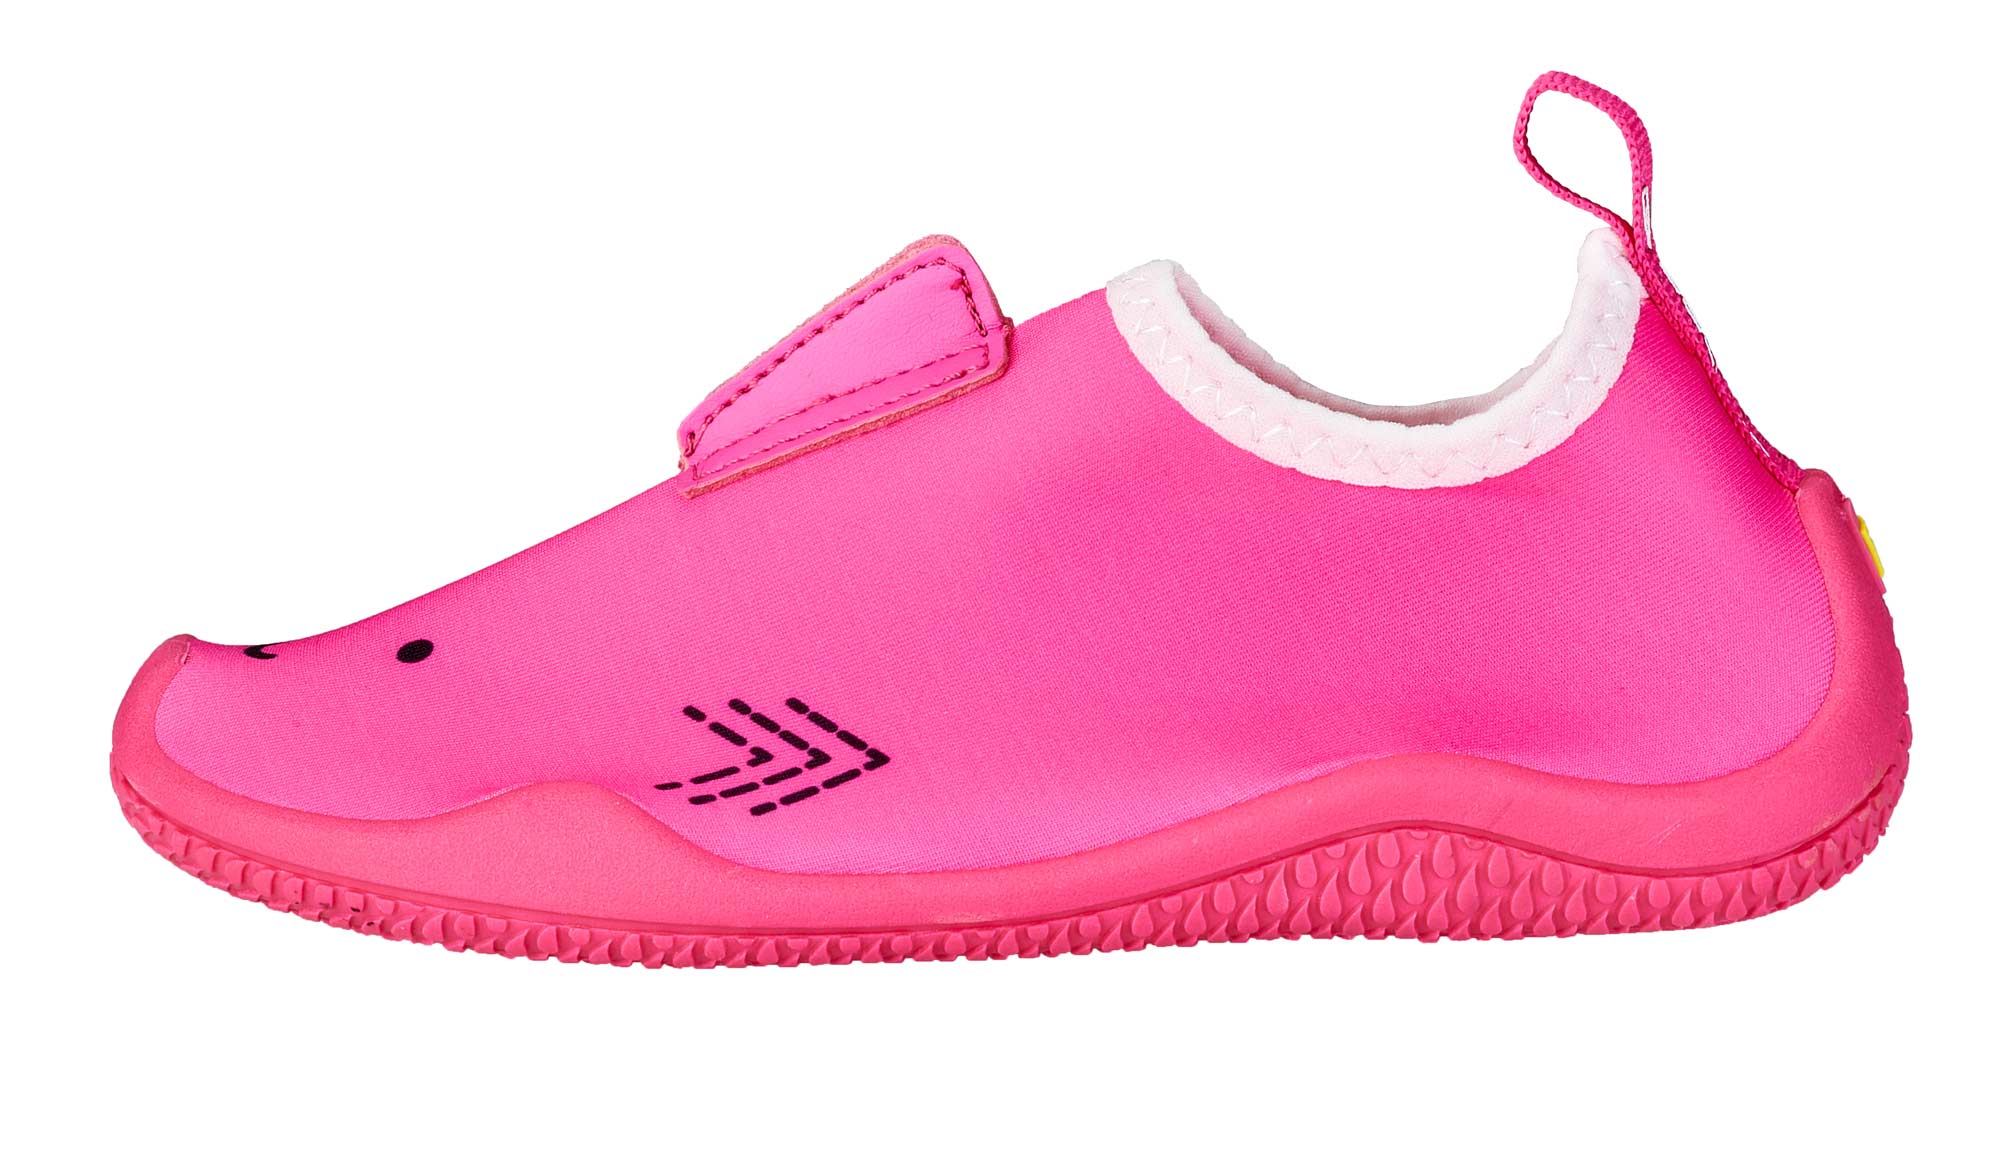 BALLOP Kids Schuhe Shark pink